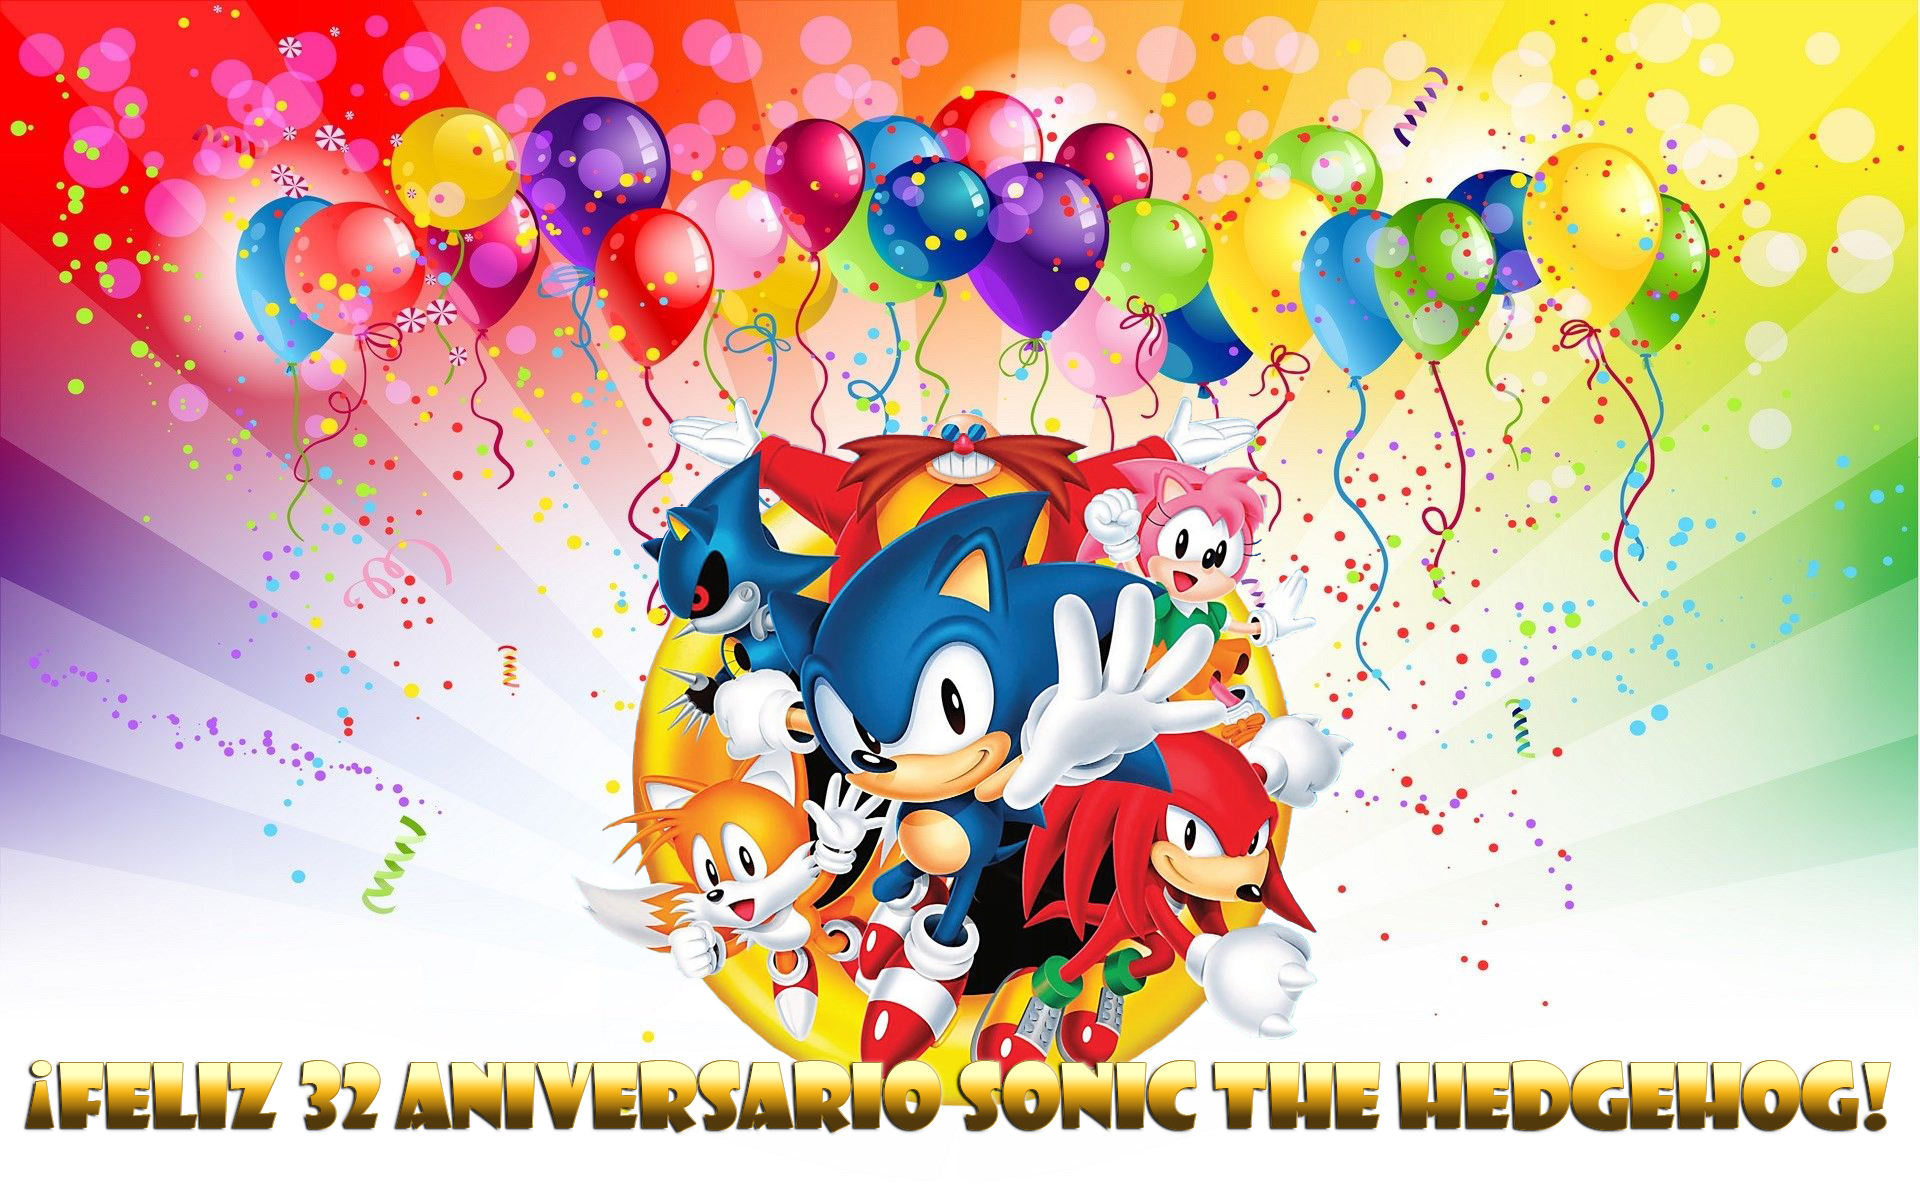 Canción del Cumpleaños Feliz con Sonic 🦔🎂 